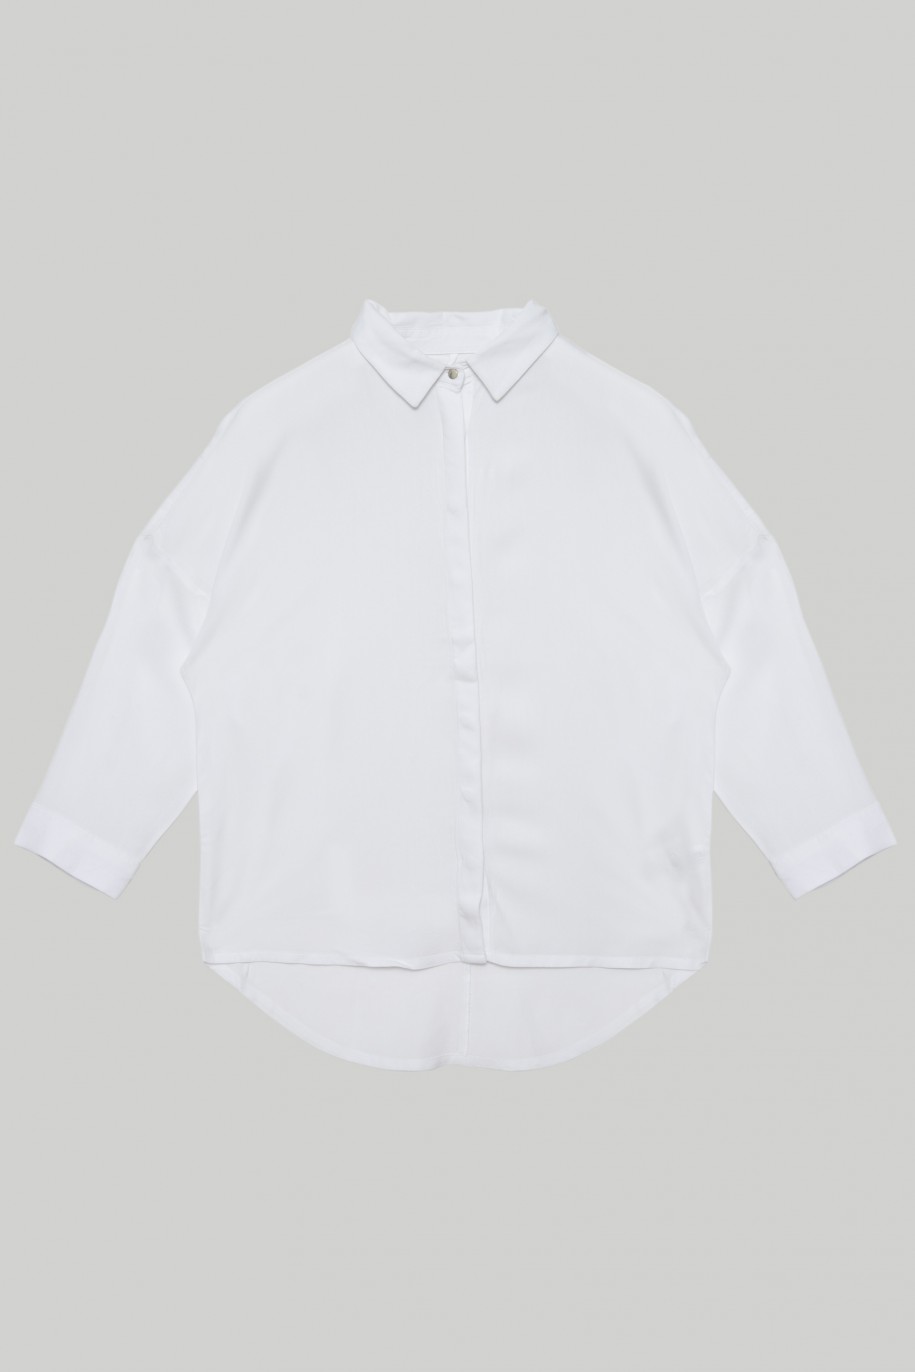 Klasyczna biała koszula z przedłużanym tyłem dla dziewczyny - 28273